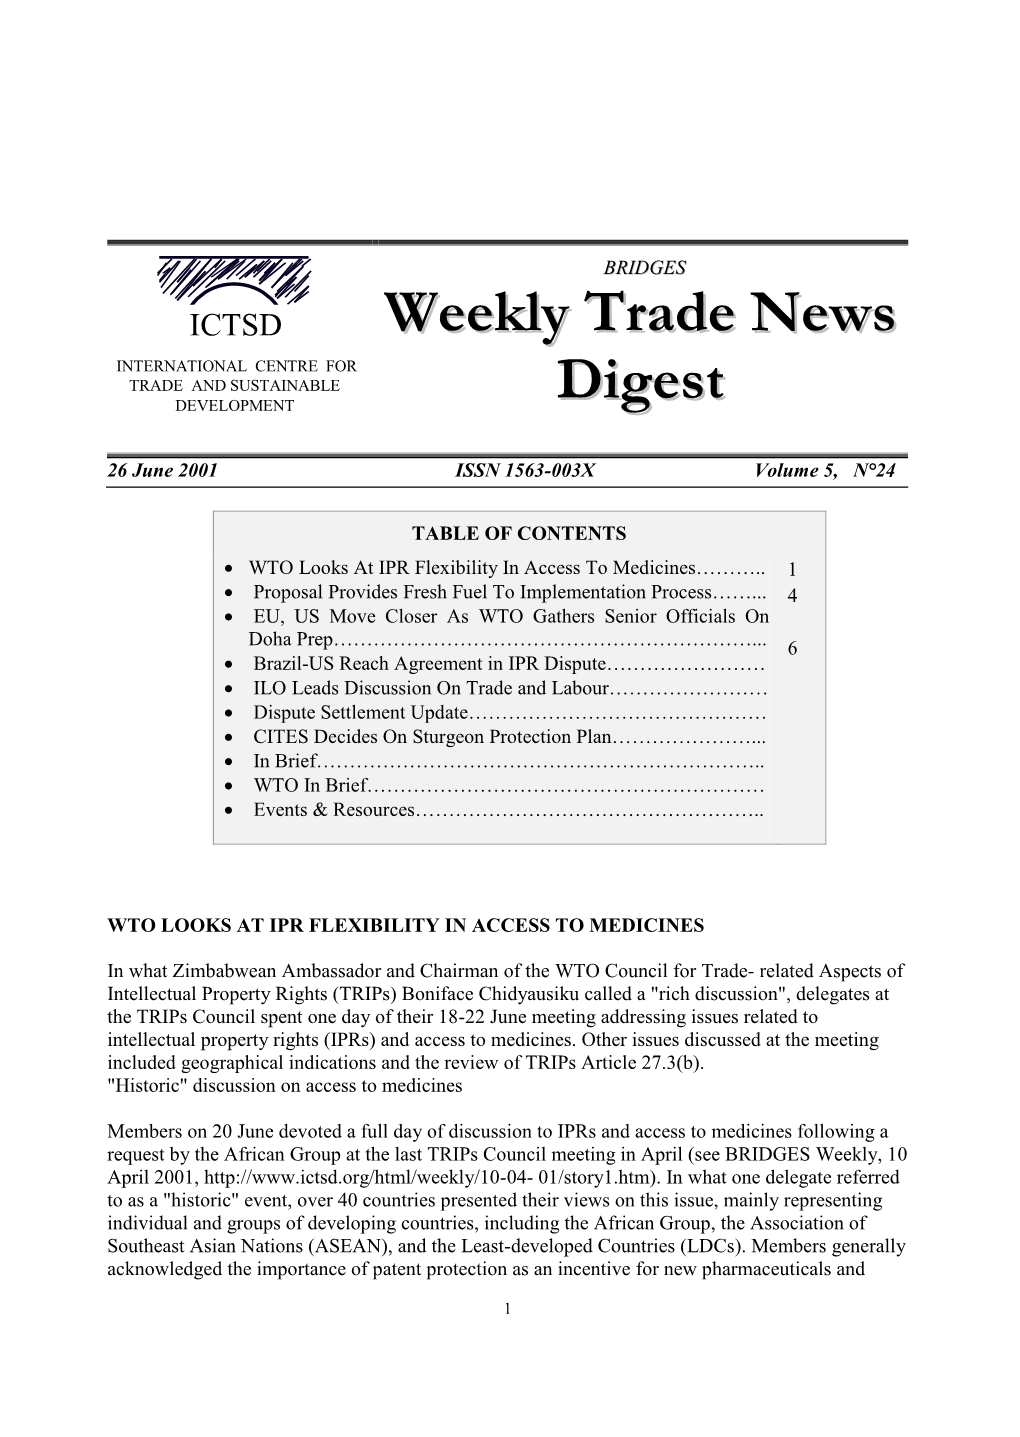 BRIDGES Weekly Trade News Digest